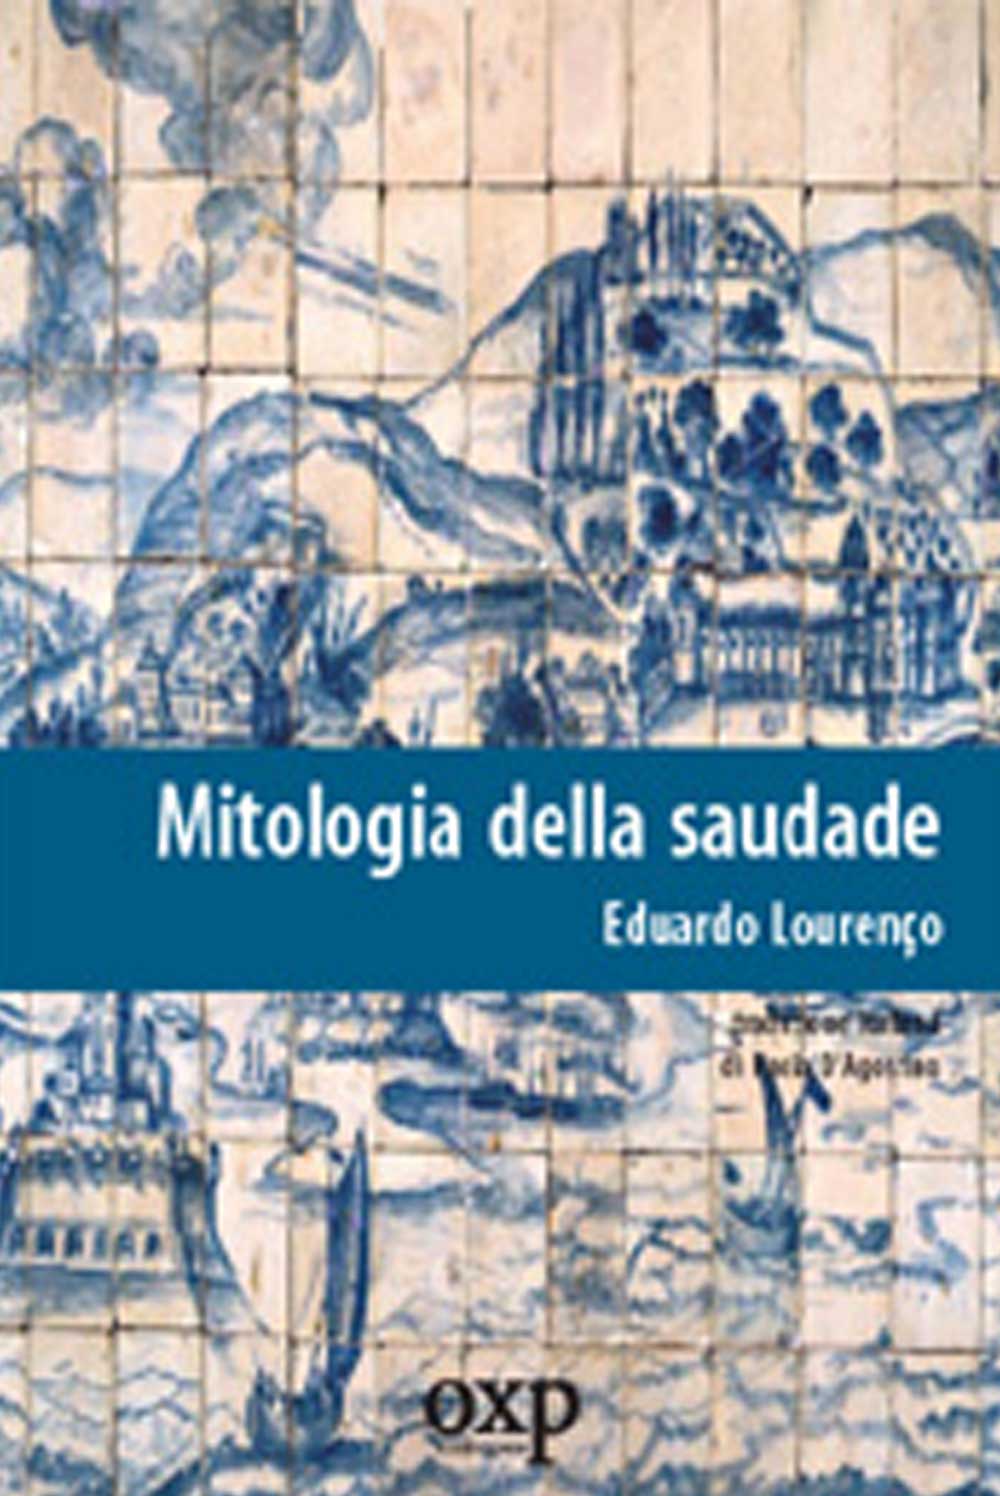 https://www.amazon.it/Mitologia-della-saudade-Eduardo-Louren%C3%A7o/dp/8895007069